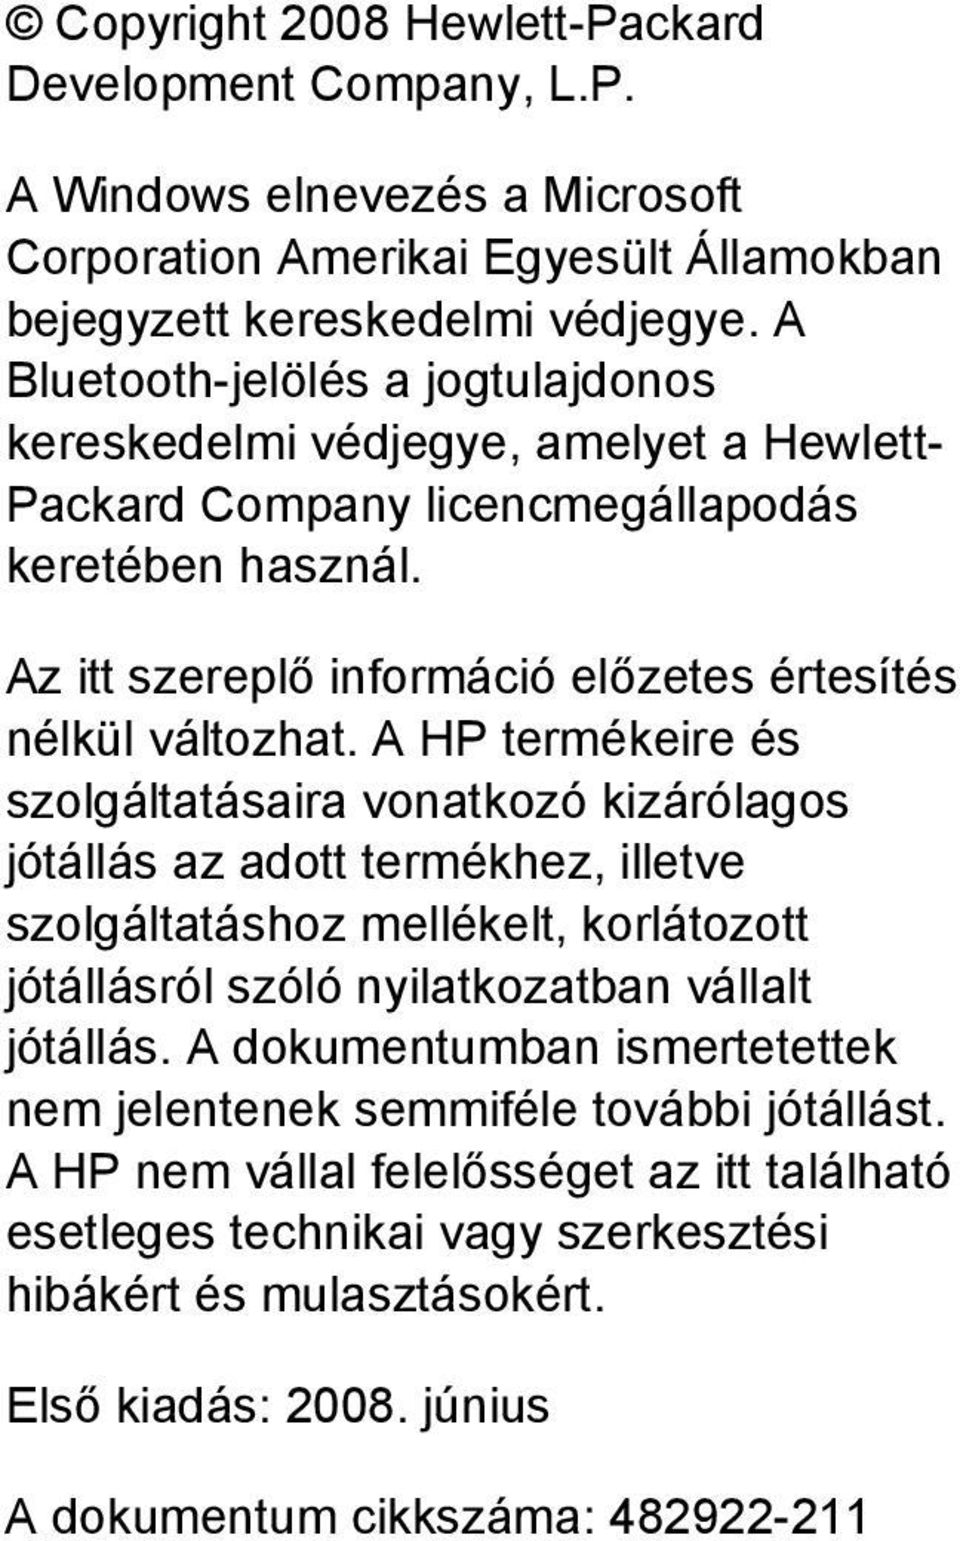 A HP termékeire és szolgáltatásaira vonatkozó kizárólagos jótállás az adott termékhez, illetve szolgáltatáshoz mellékelt, korlátozott jótállásról szóló nyilatkozatban vállalt jótállás.